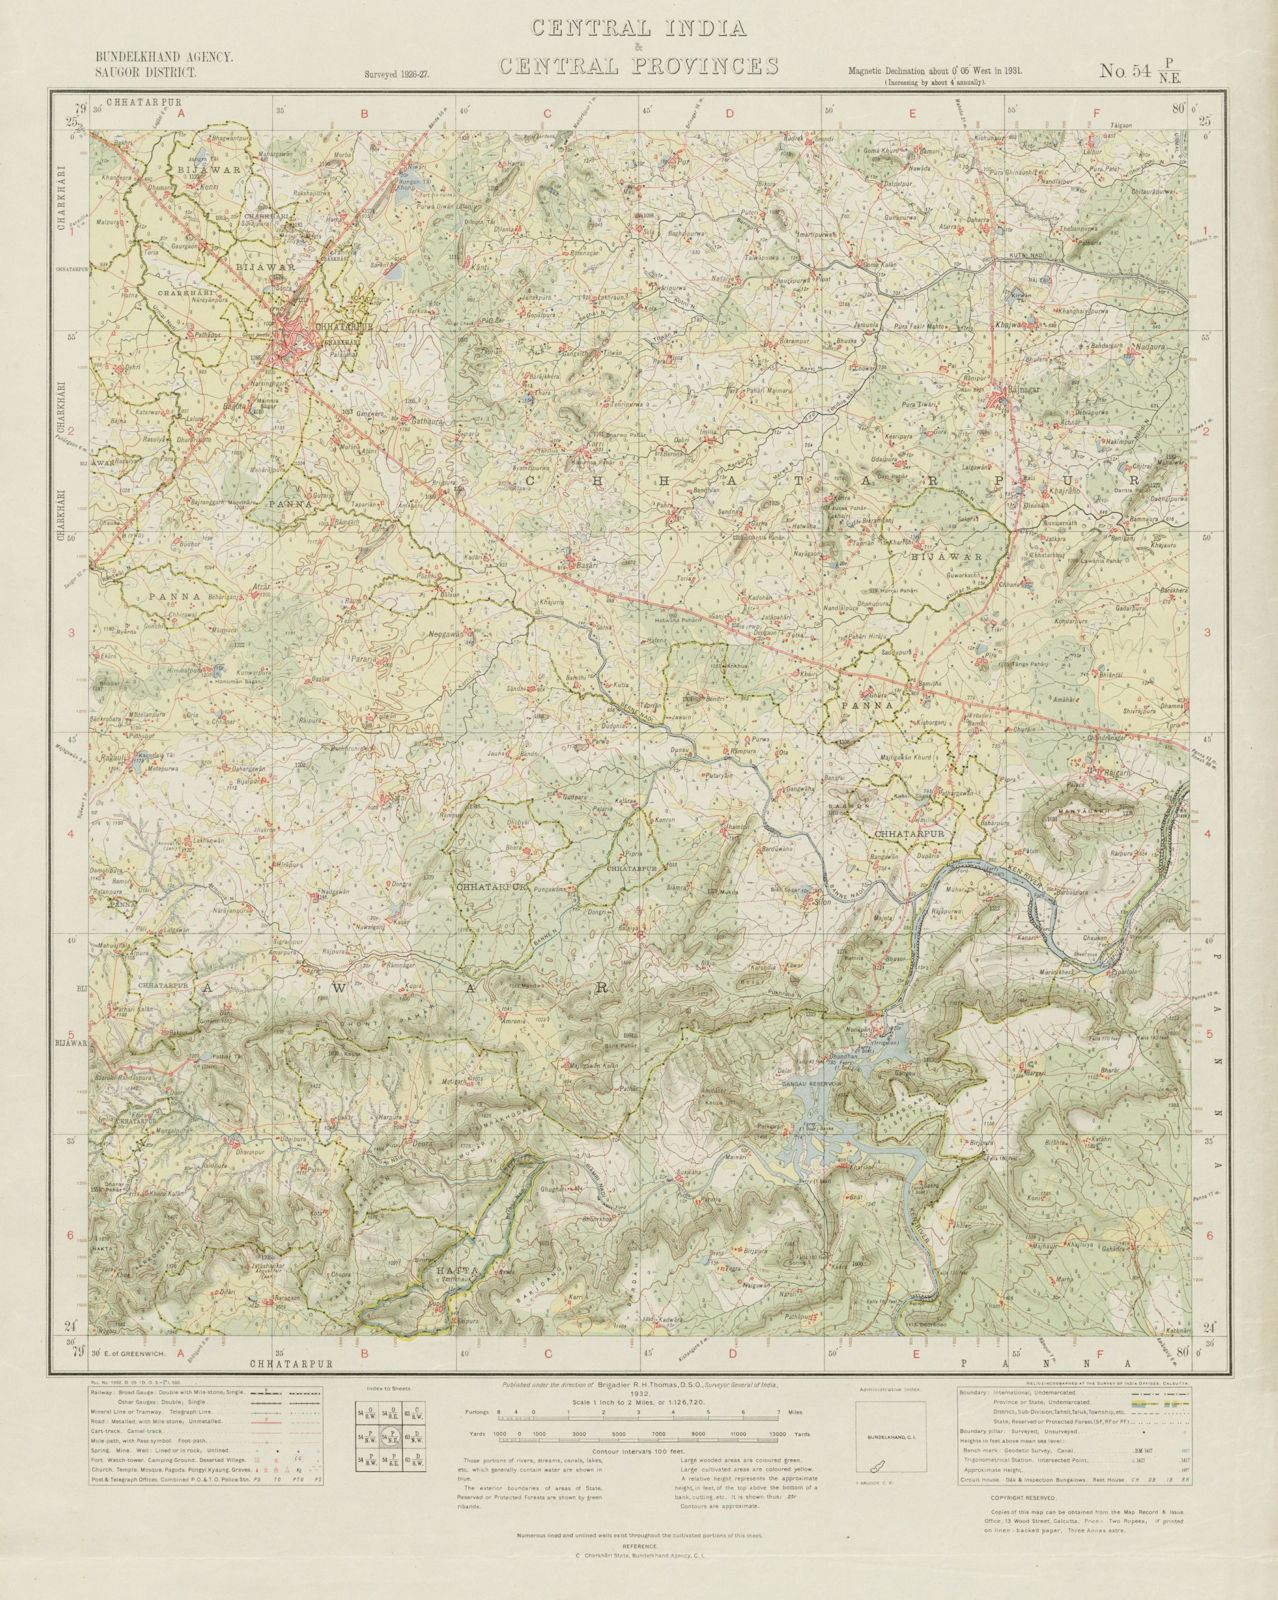 SURVEY OF INDIA 54 P/NE Madhya Pradesh Chhatarpur Khajuraho Monuments 1932 map